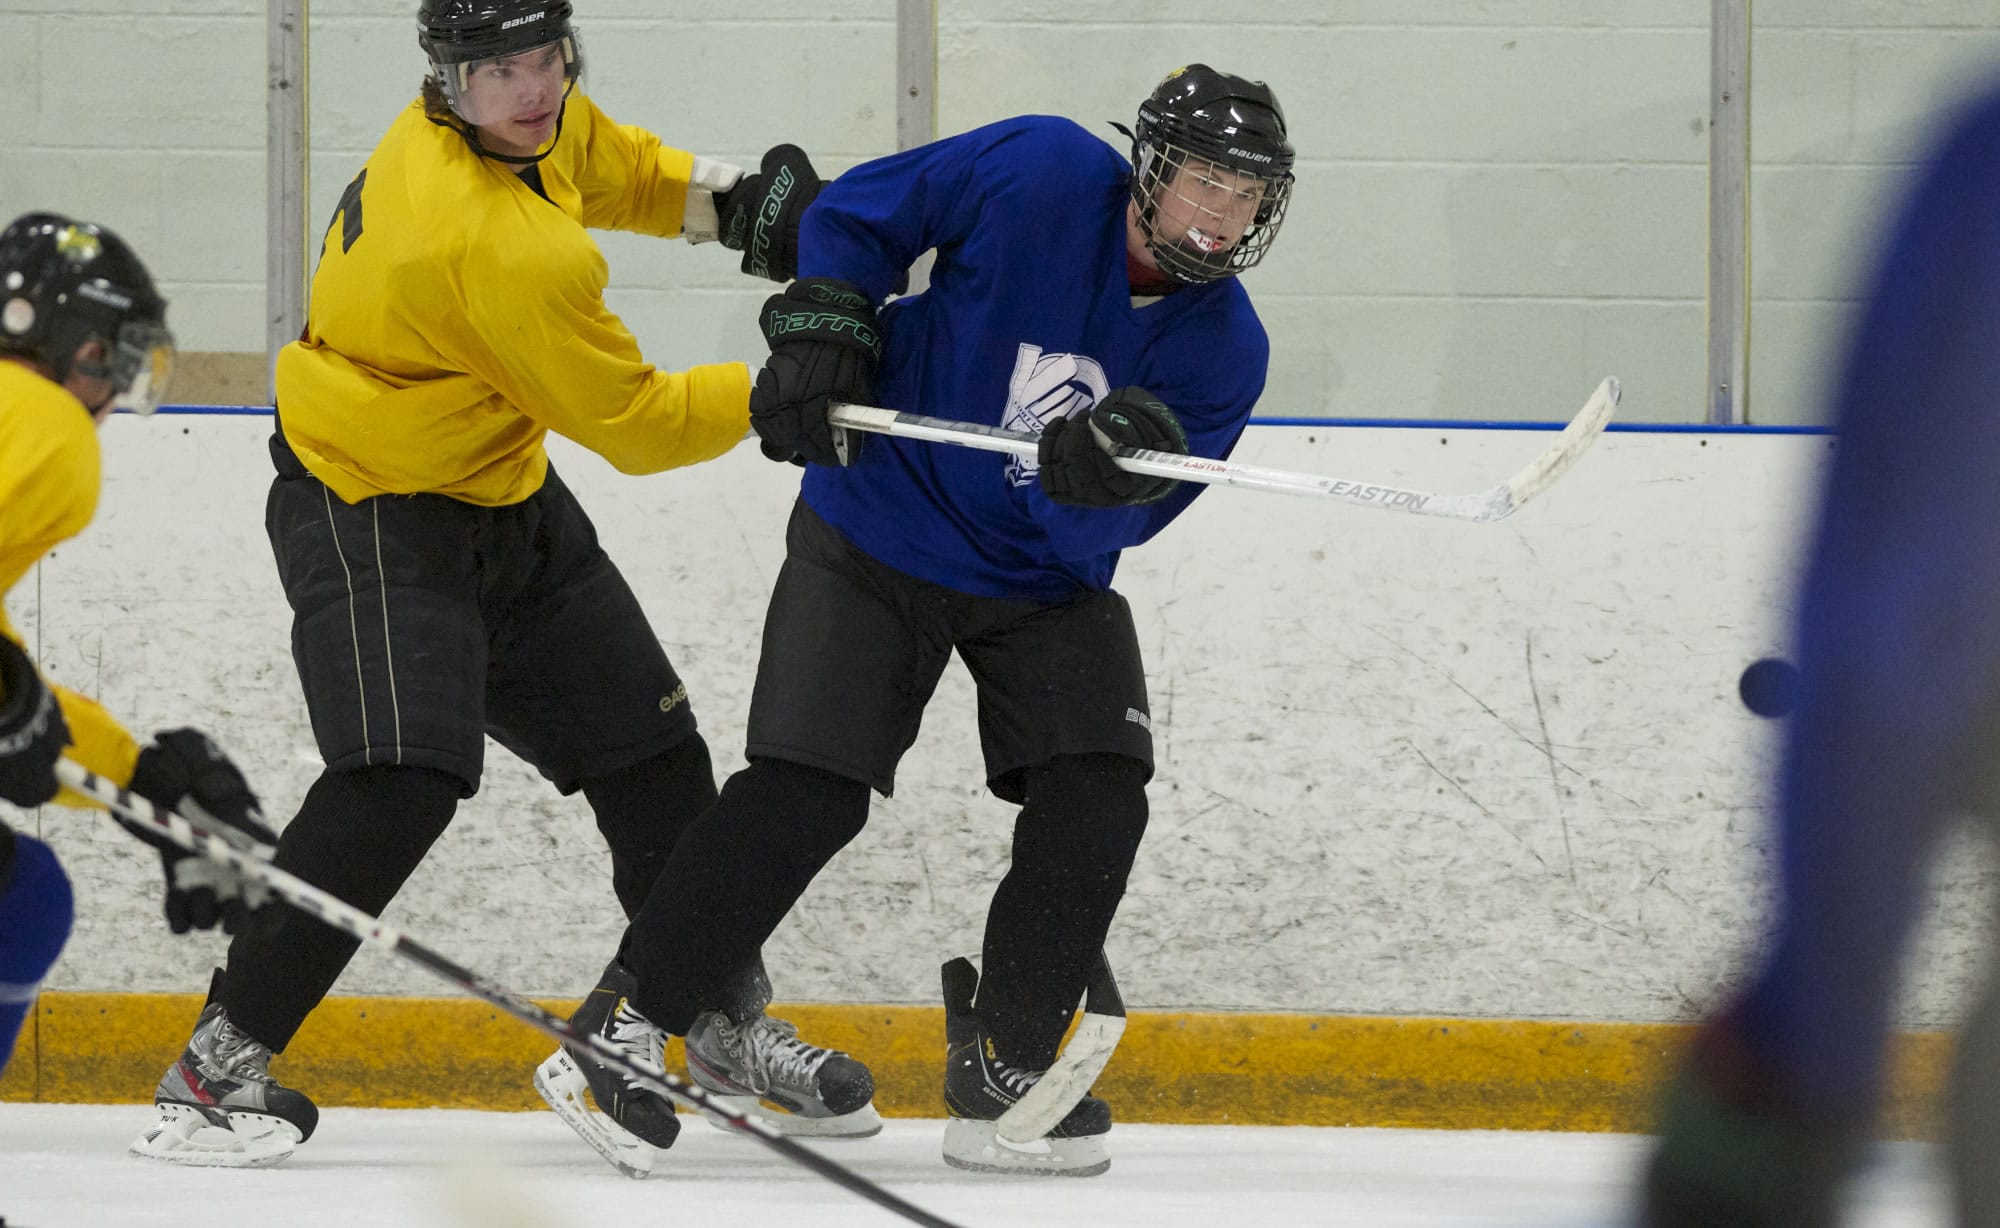 Fort Vancouver Vipers hockey team seeks firm footing